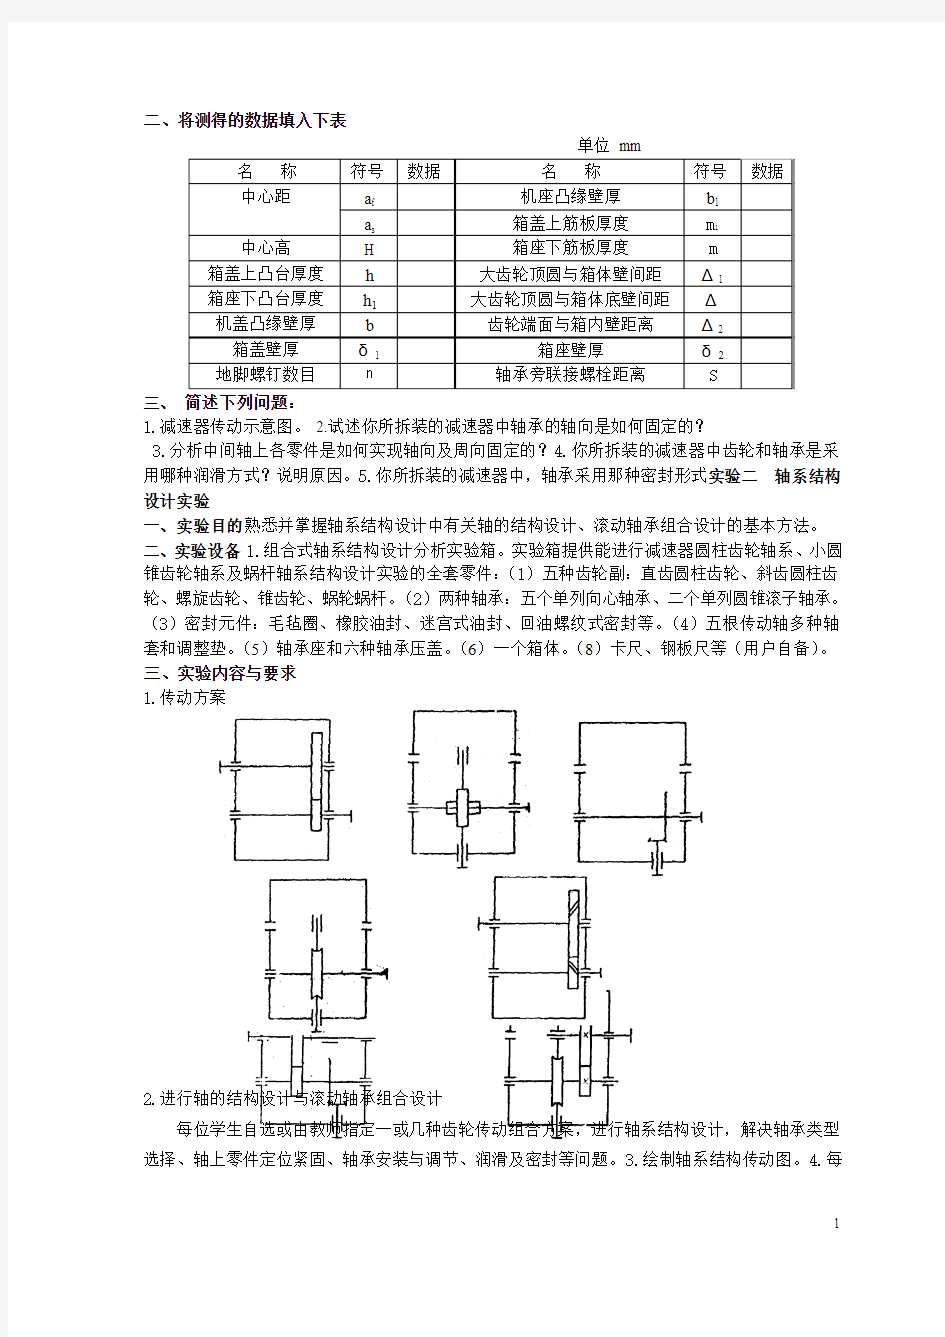 机械设计实验指导书(1)